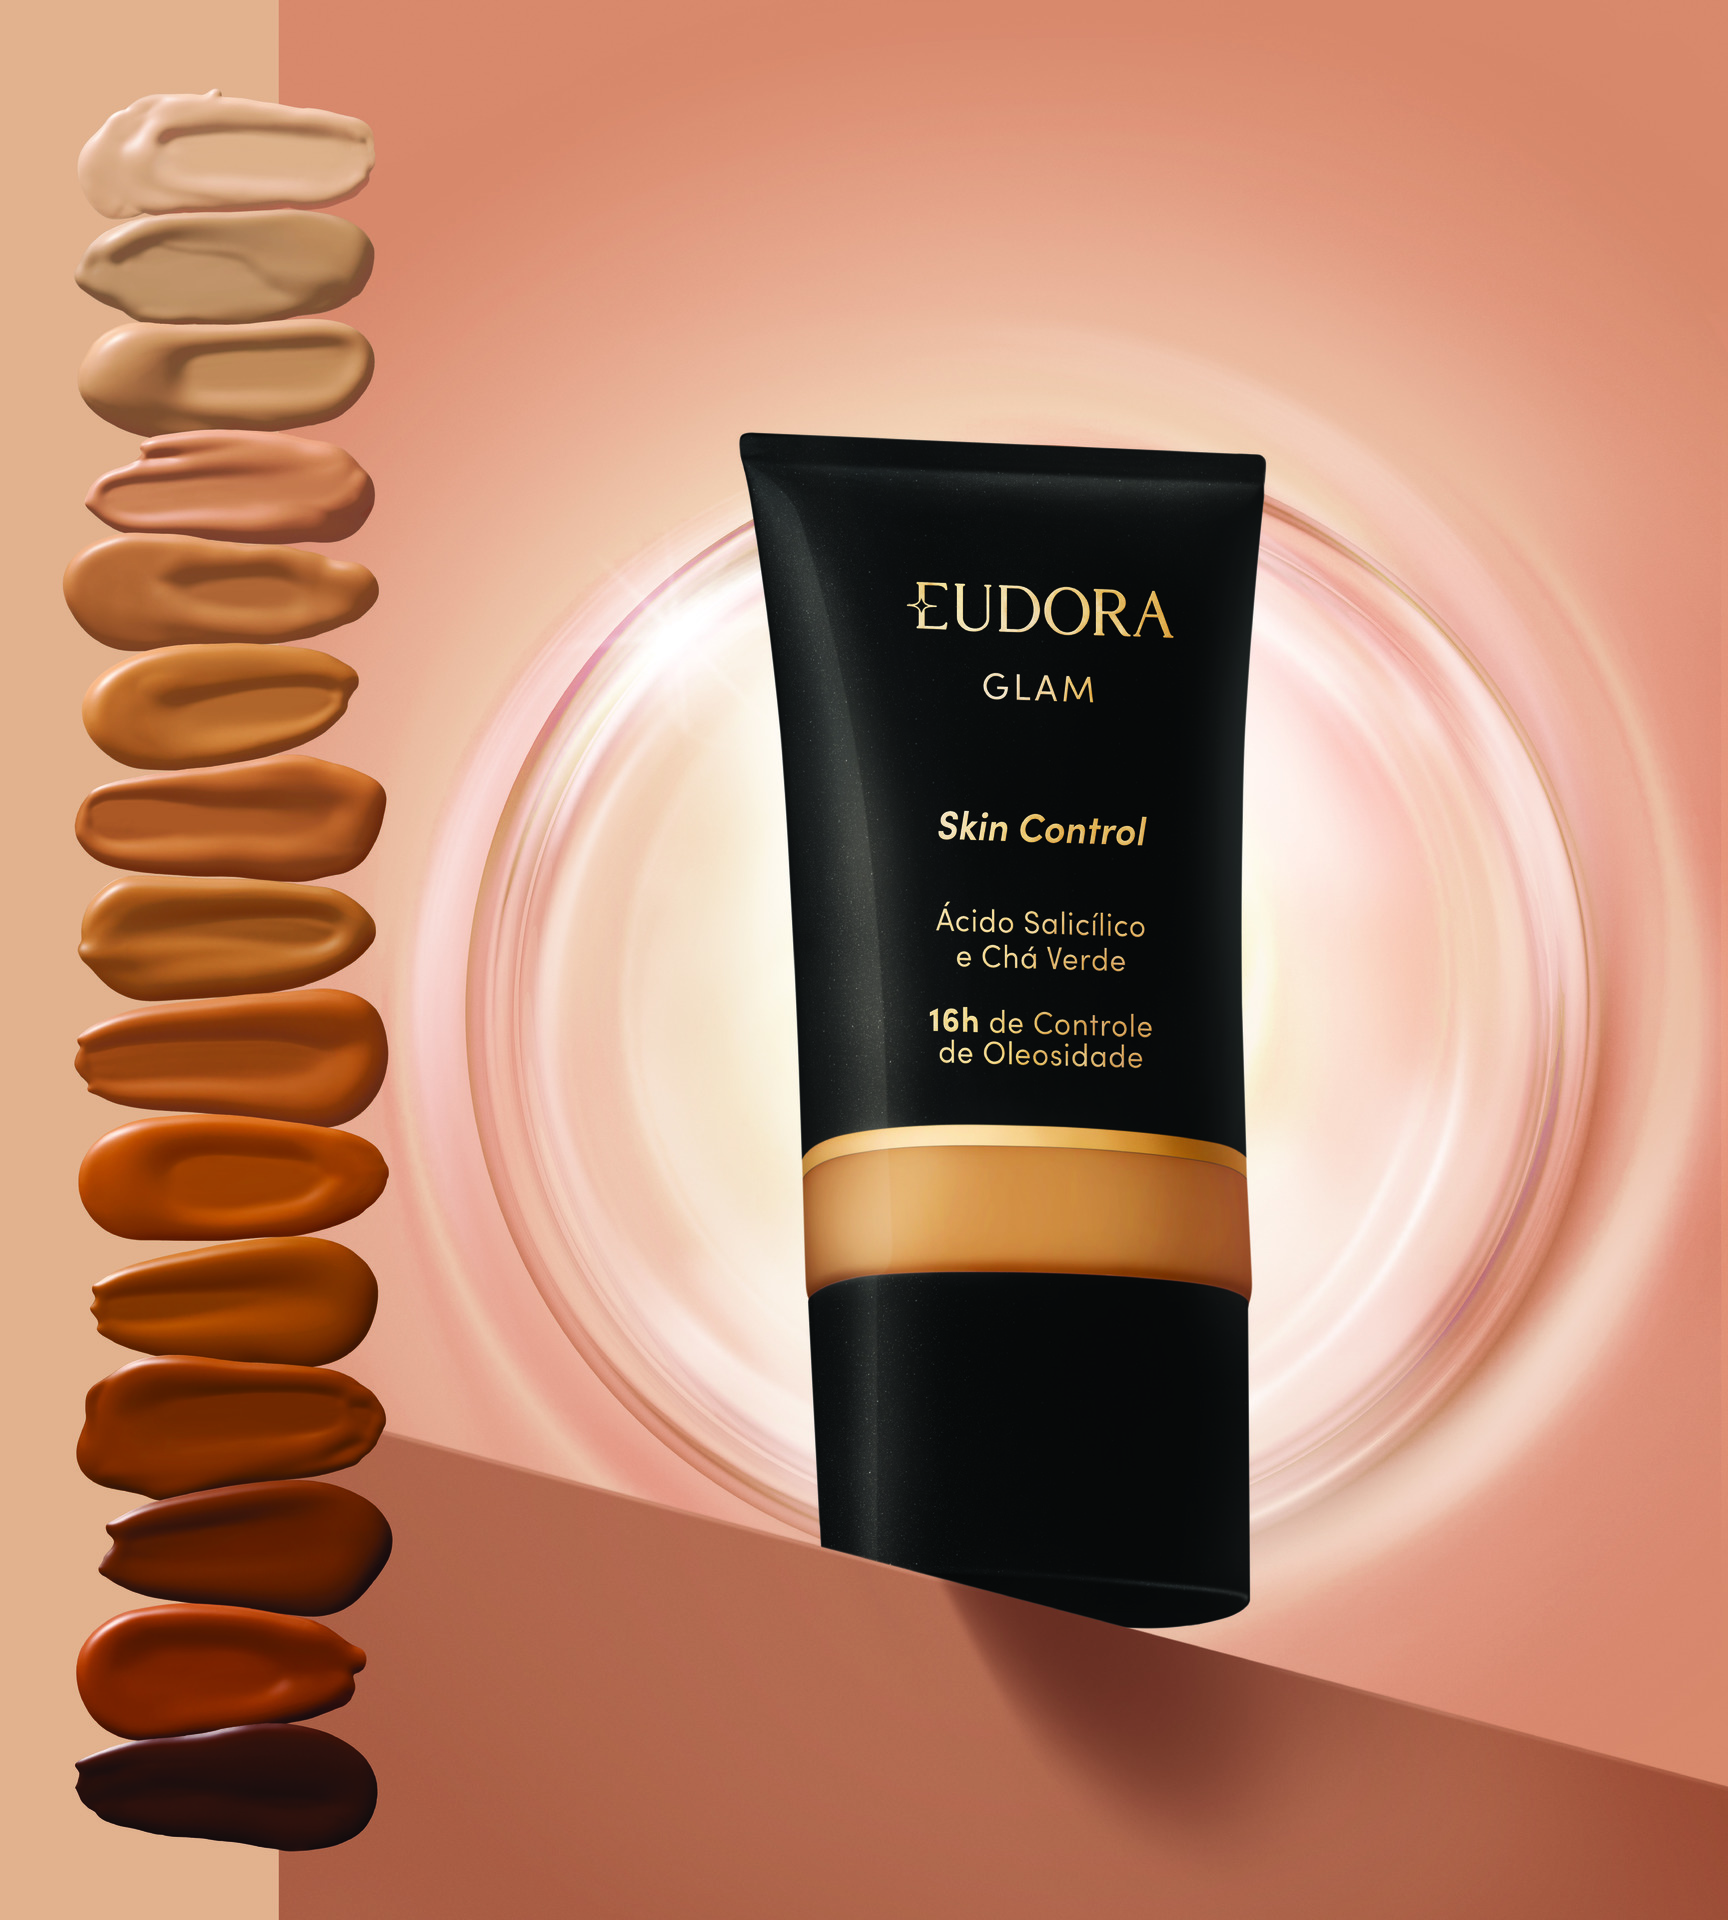 Você está visualizando atualmente Eudora Glam Skin Control tem tecnologia que promete 16 horas de antioleosidade na pele